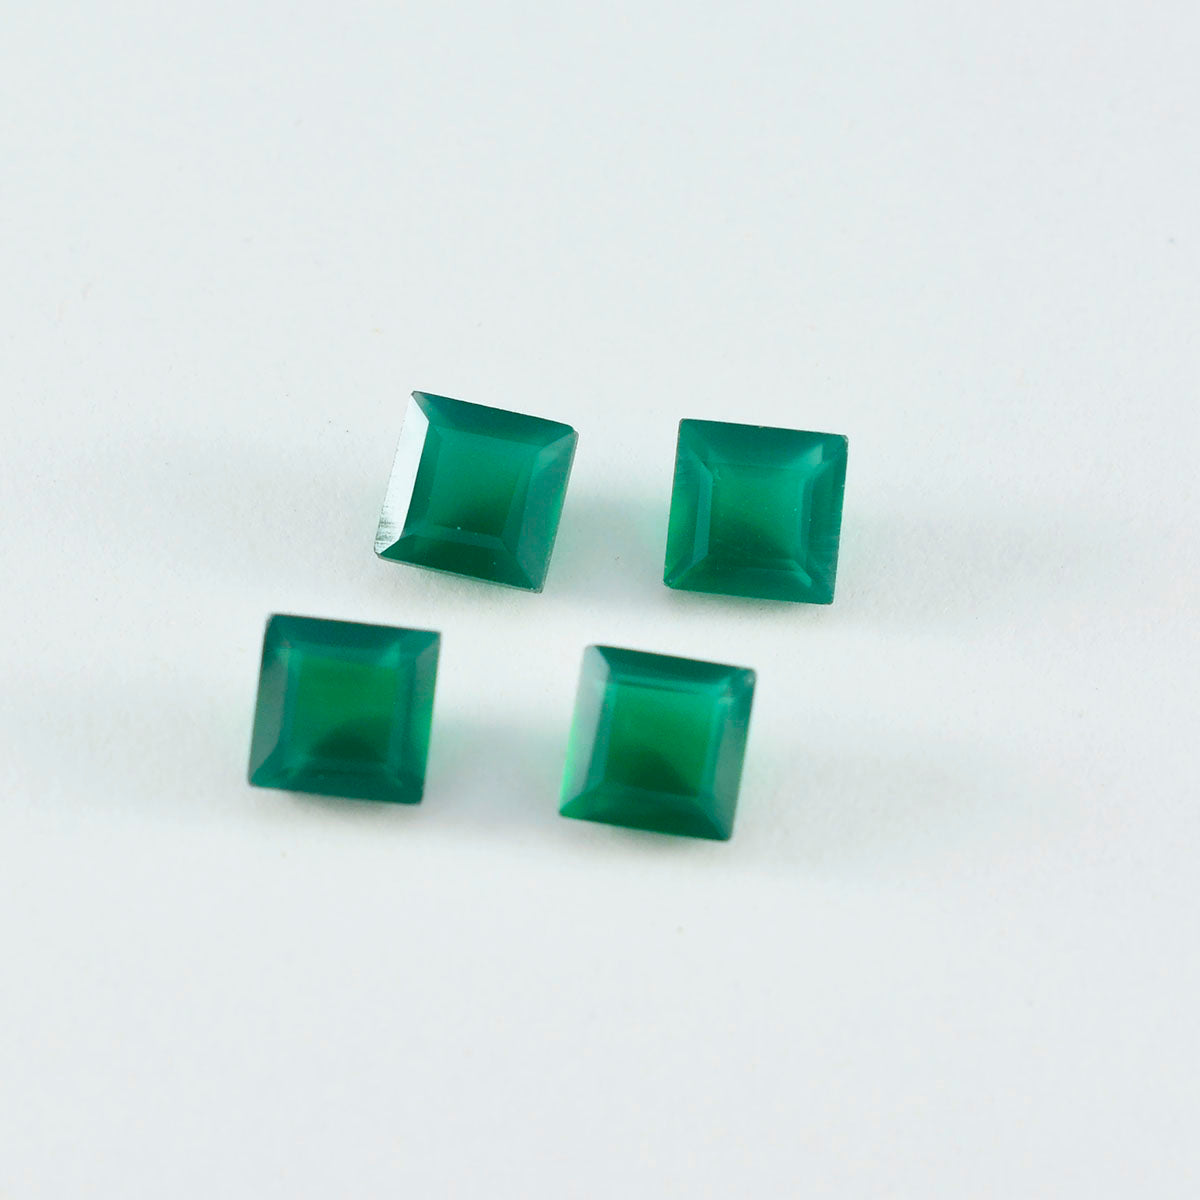 riyogems 1шт натуральный зеленый оникс ограненный 7х7 мм квадратной формы драгоценные камни отличного качества